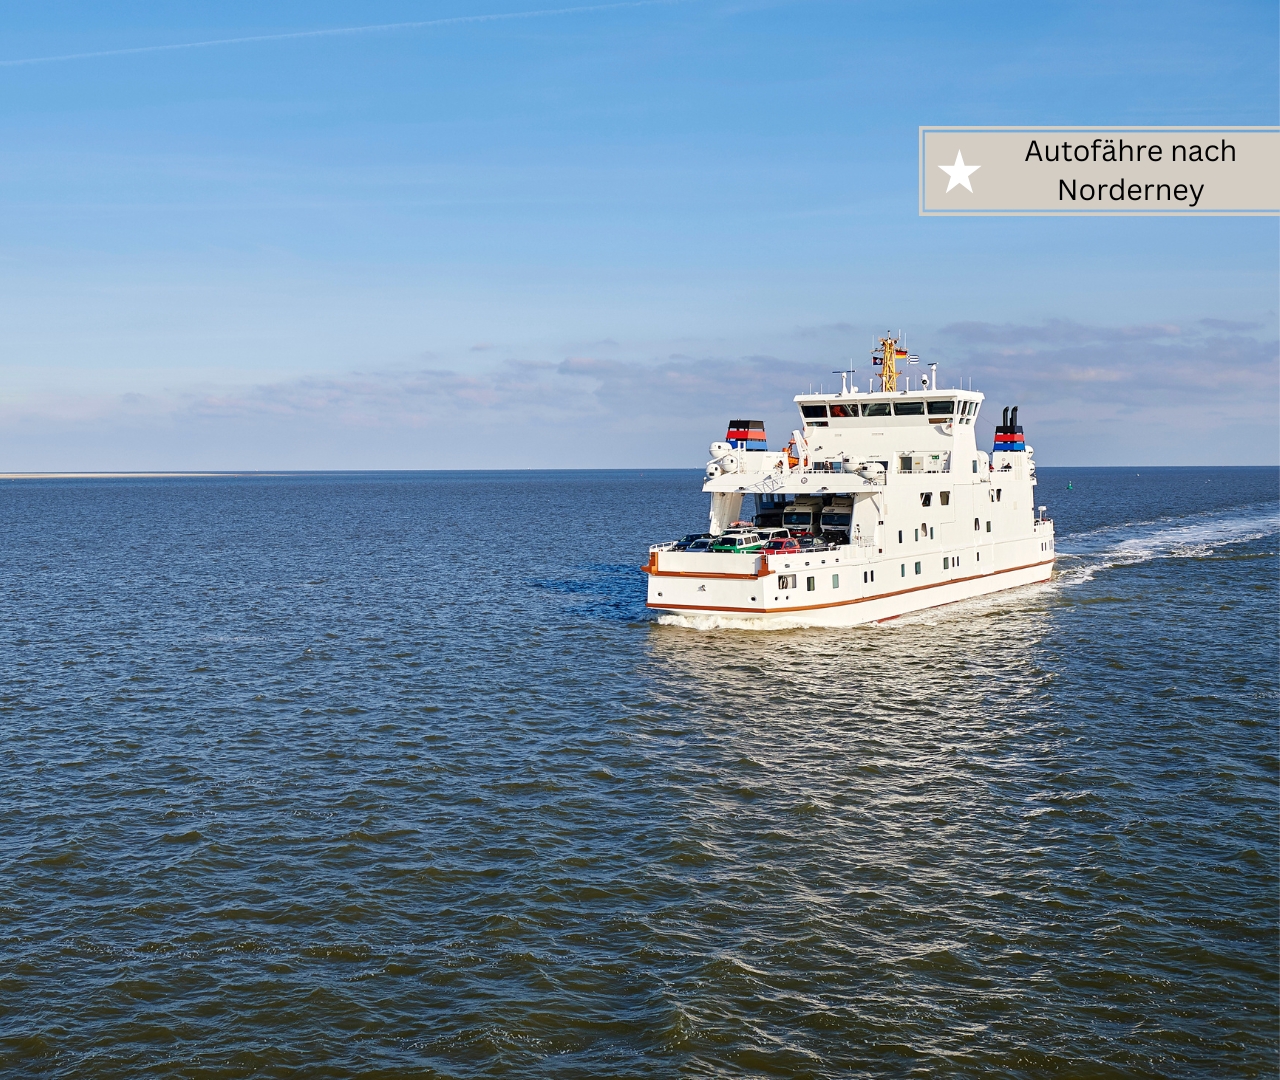 Familienurlaub an der Nordsee - Autofähre nach Norderney